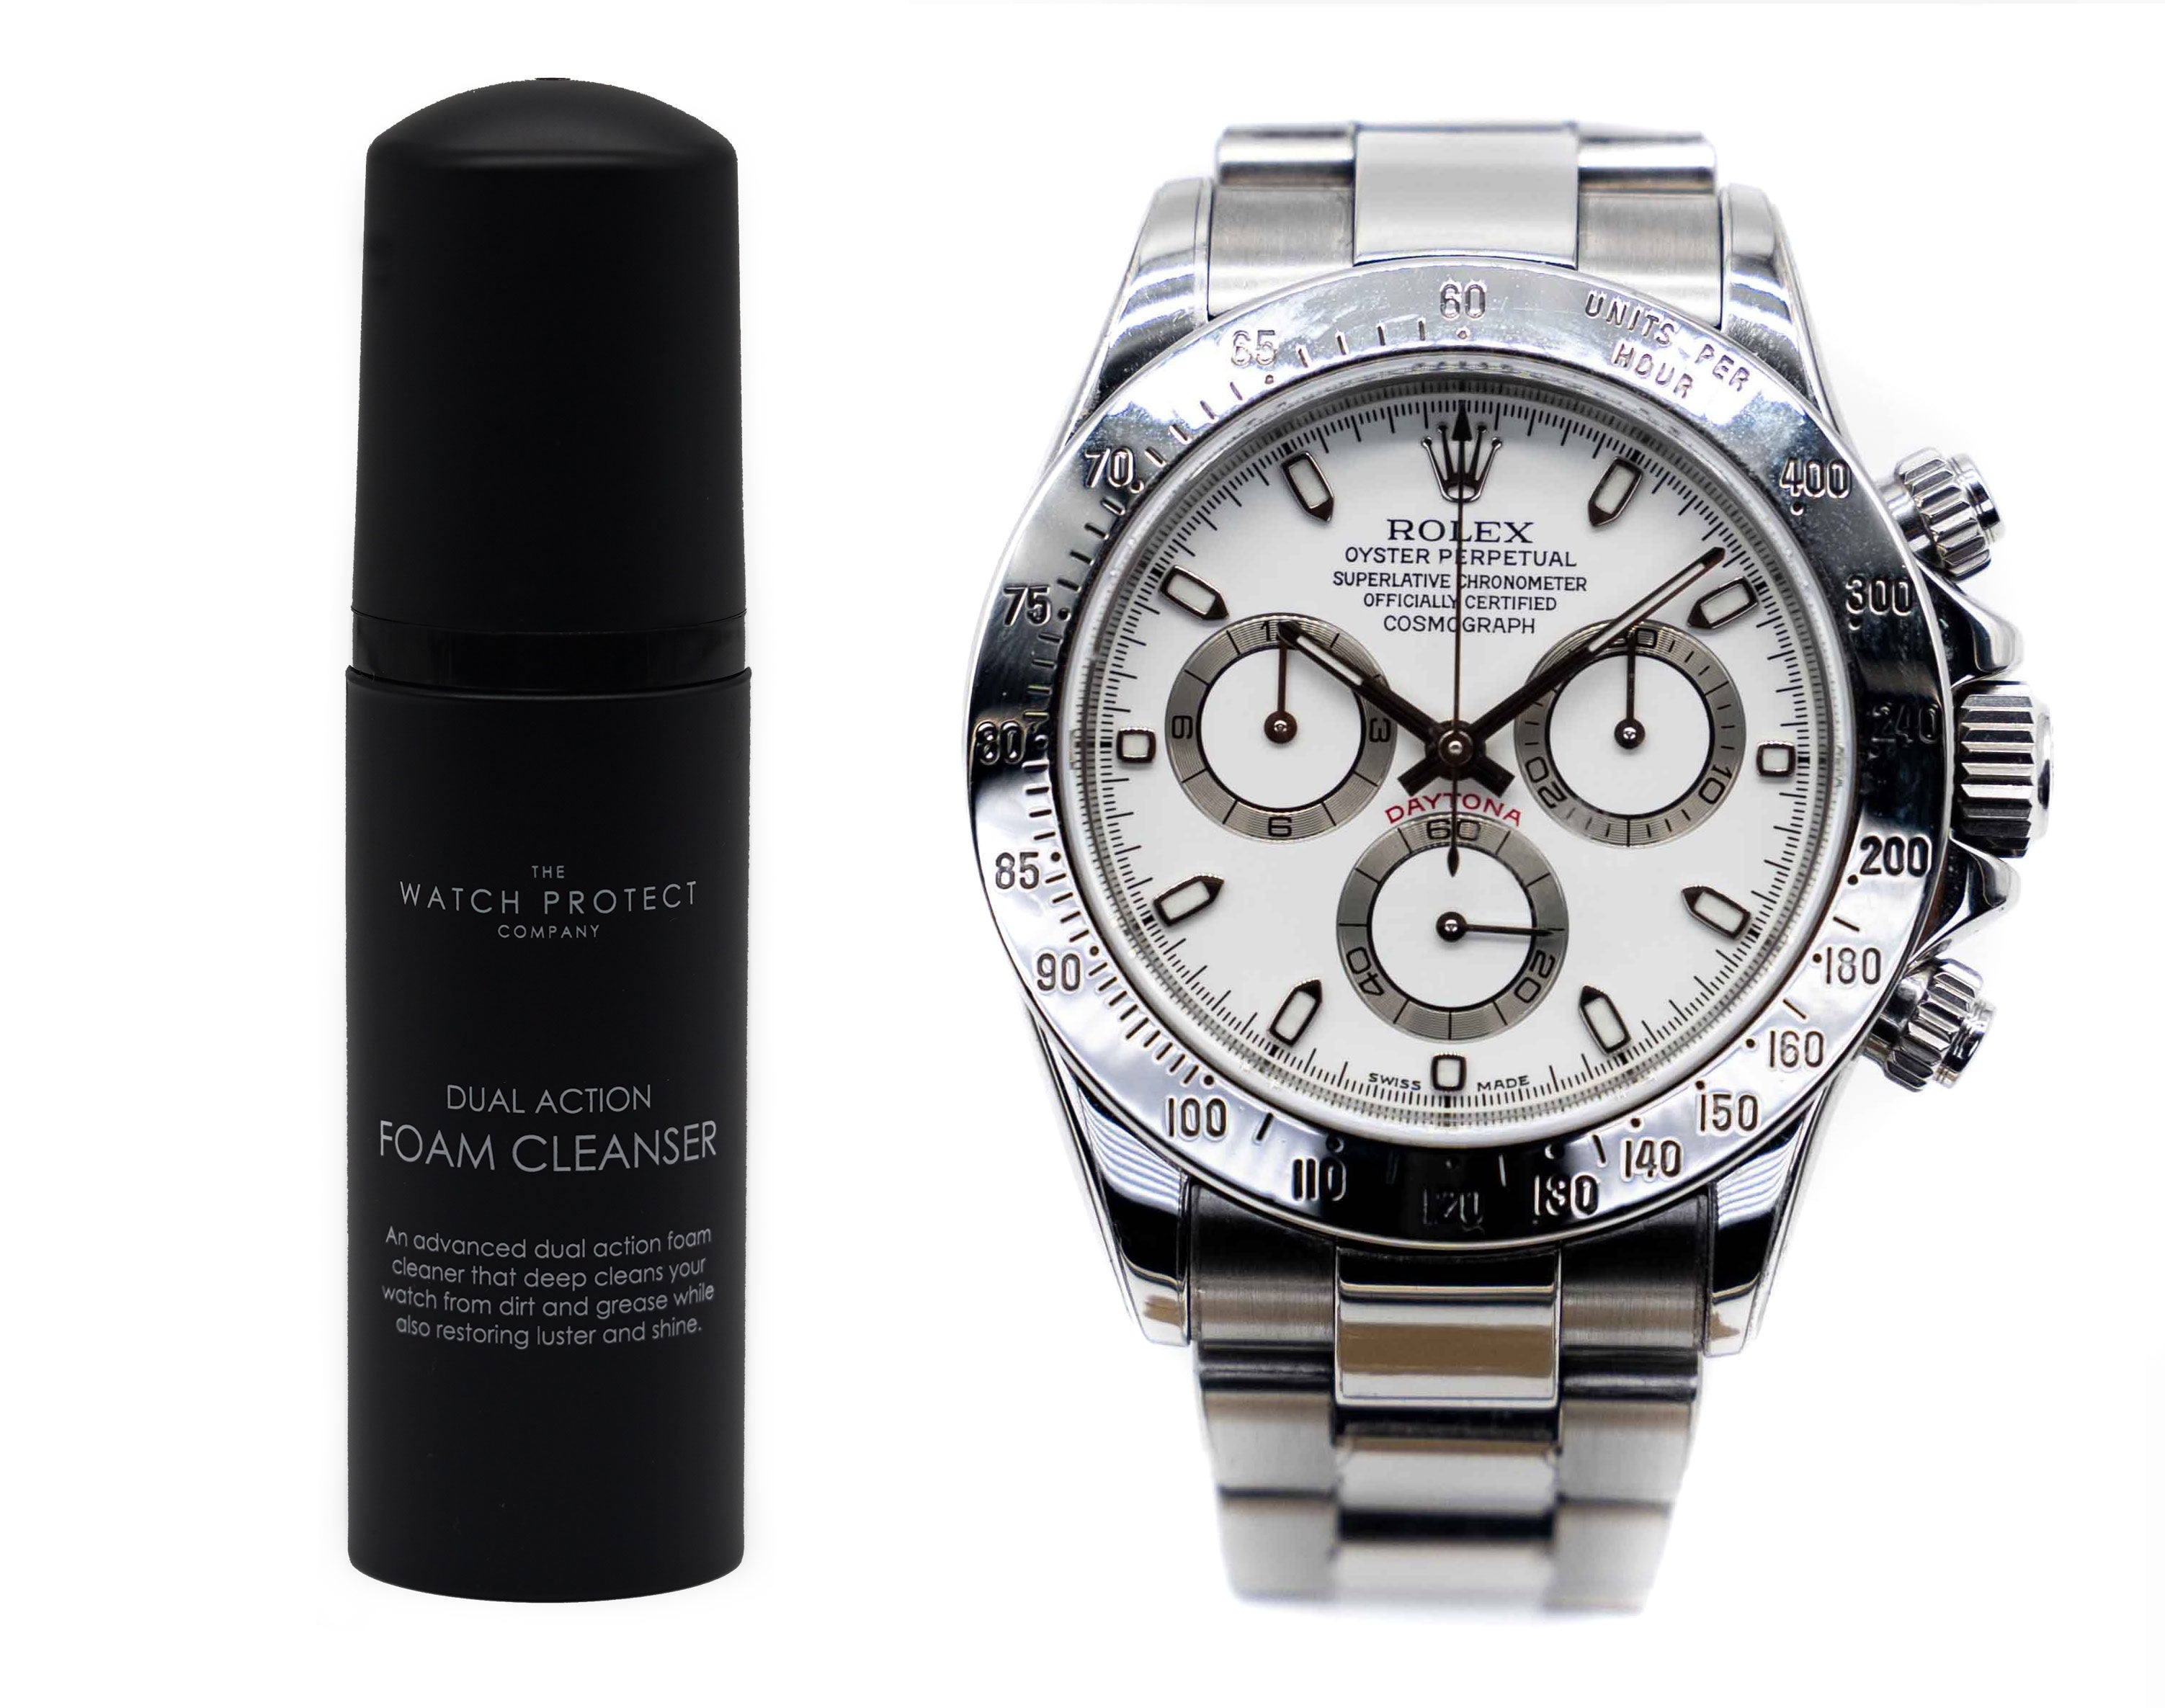 雙效泡棉清潔劑和勞力士迪通拿 116520（預陶瓷）- 第 3 層 - 手錶保護套件套裝